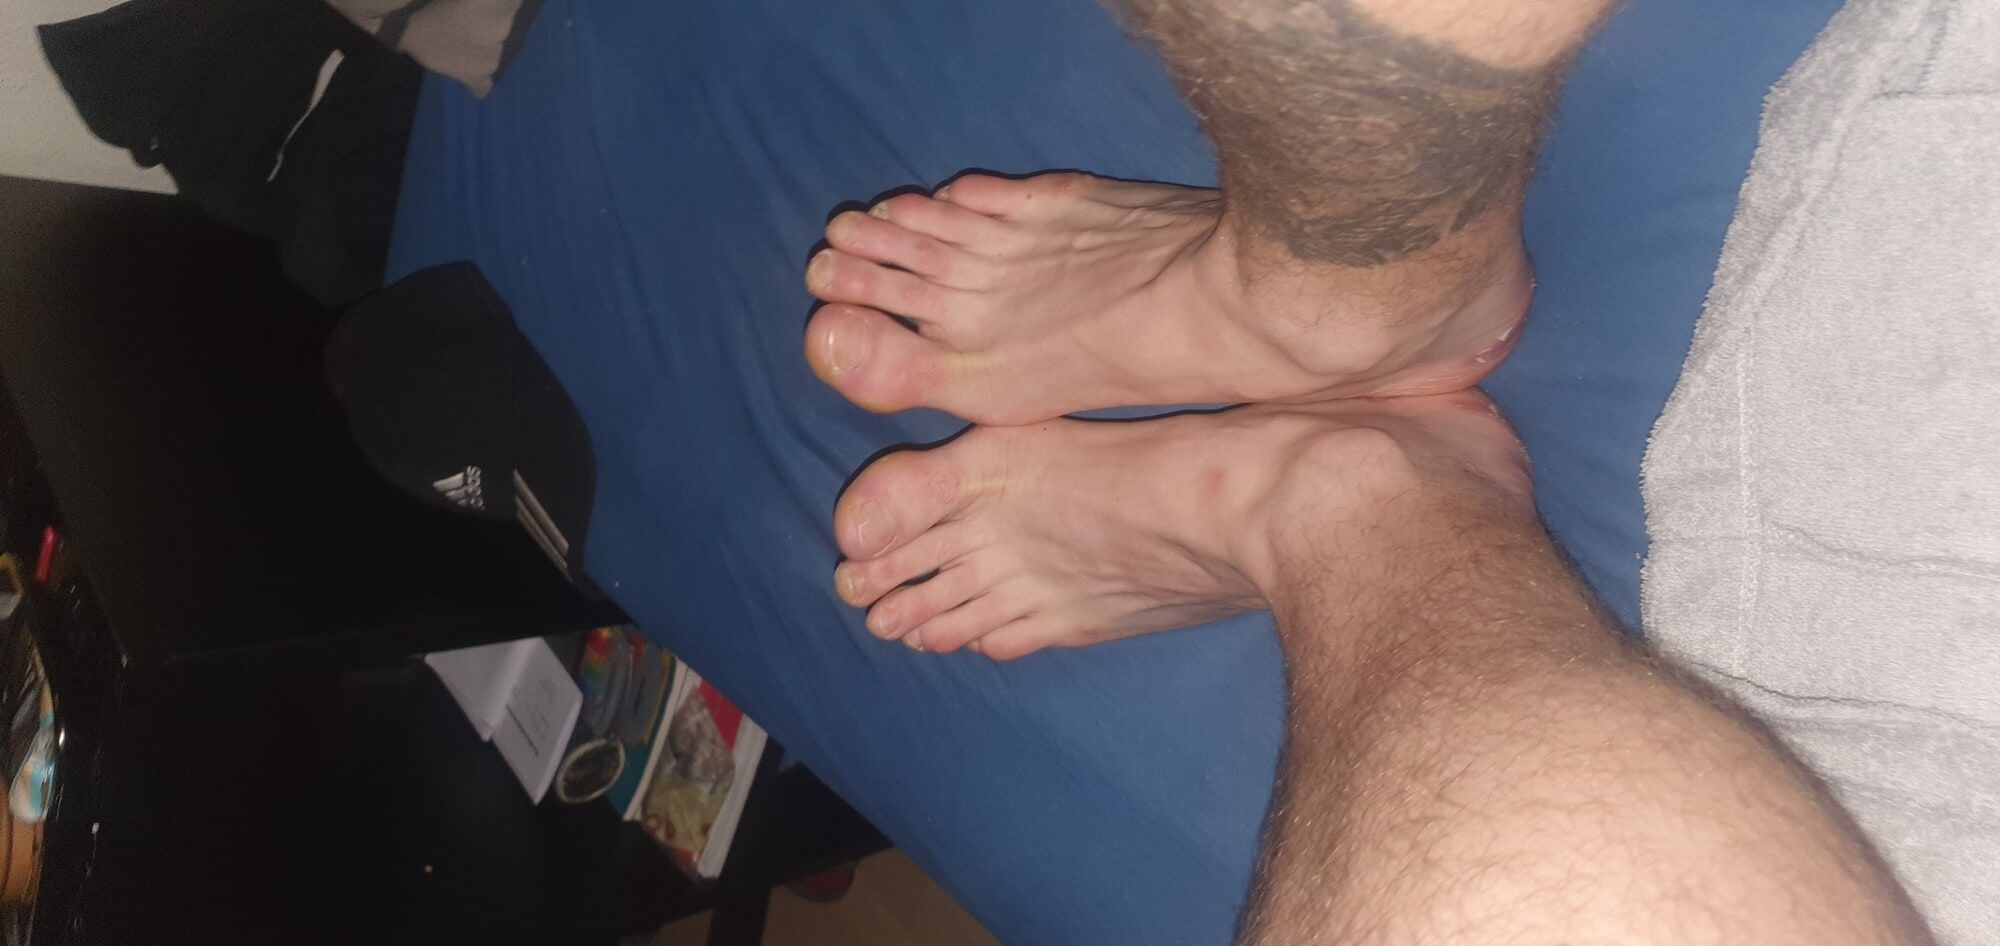 Feet boy